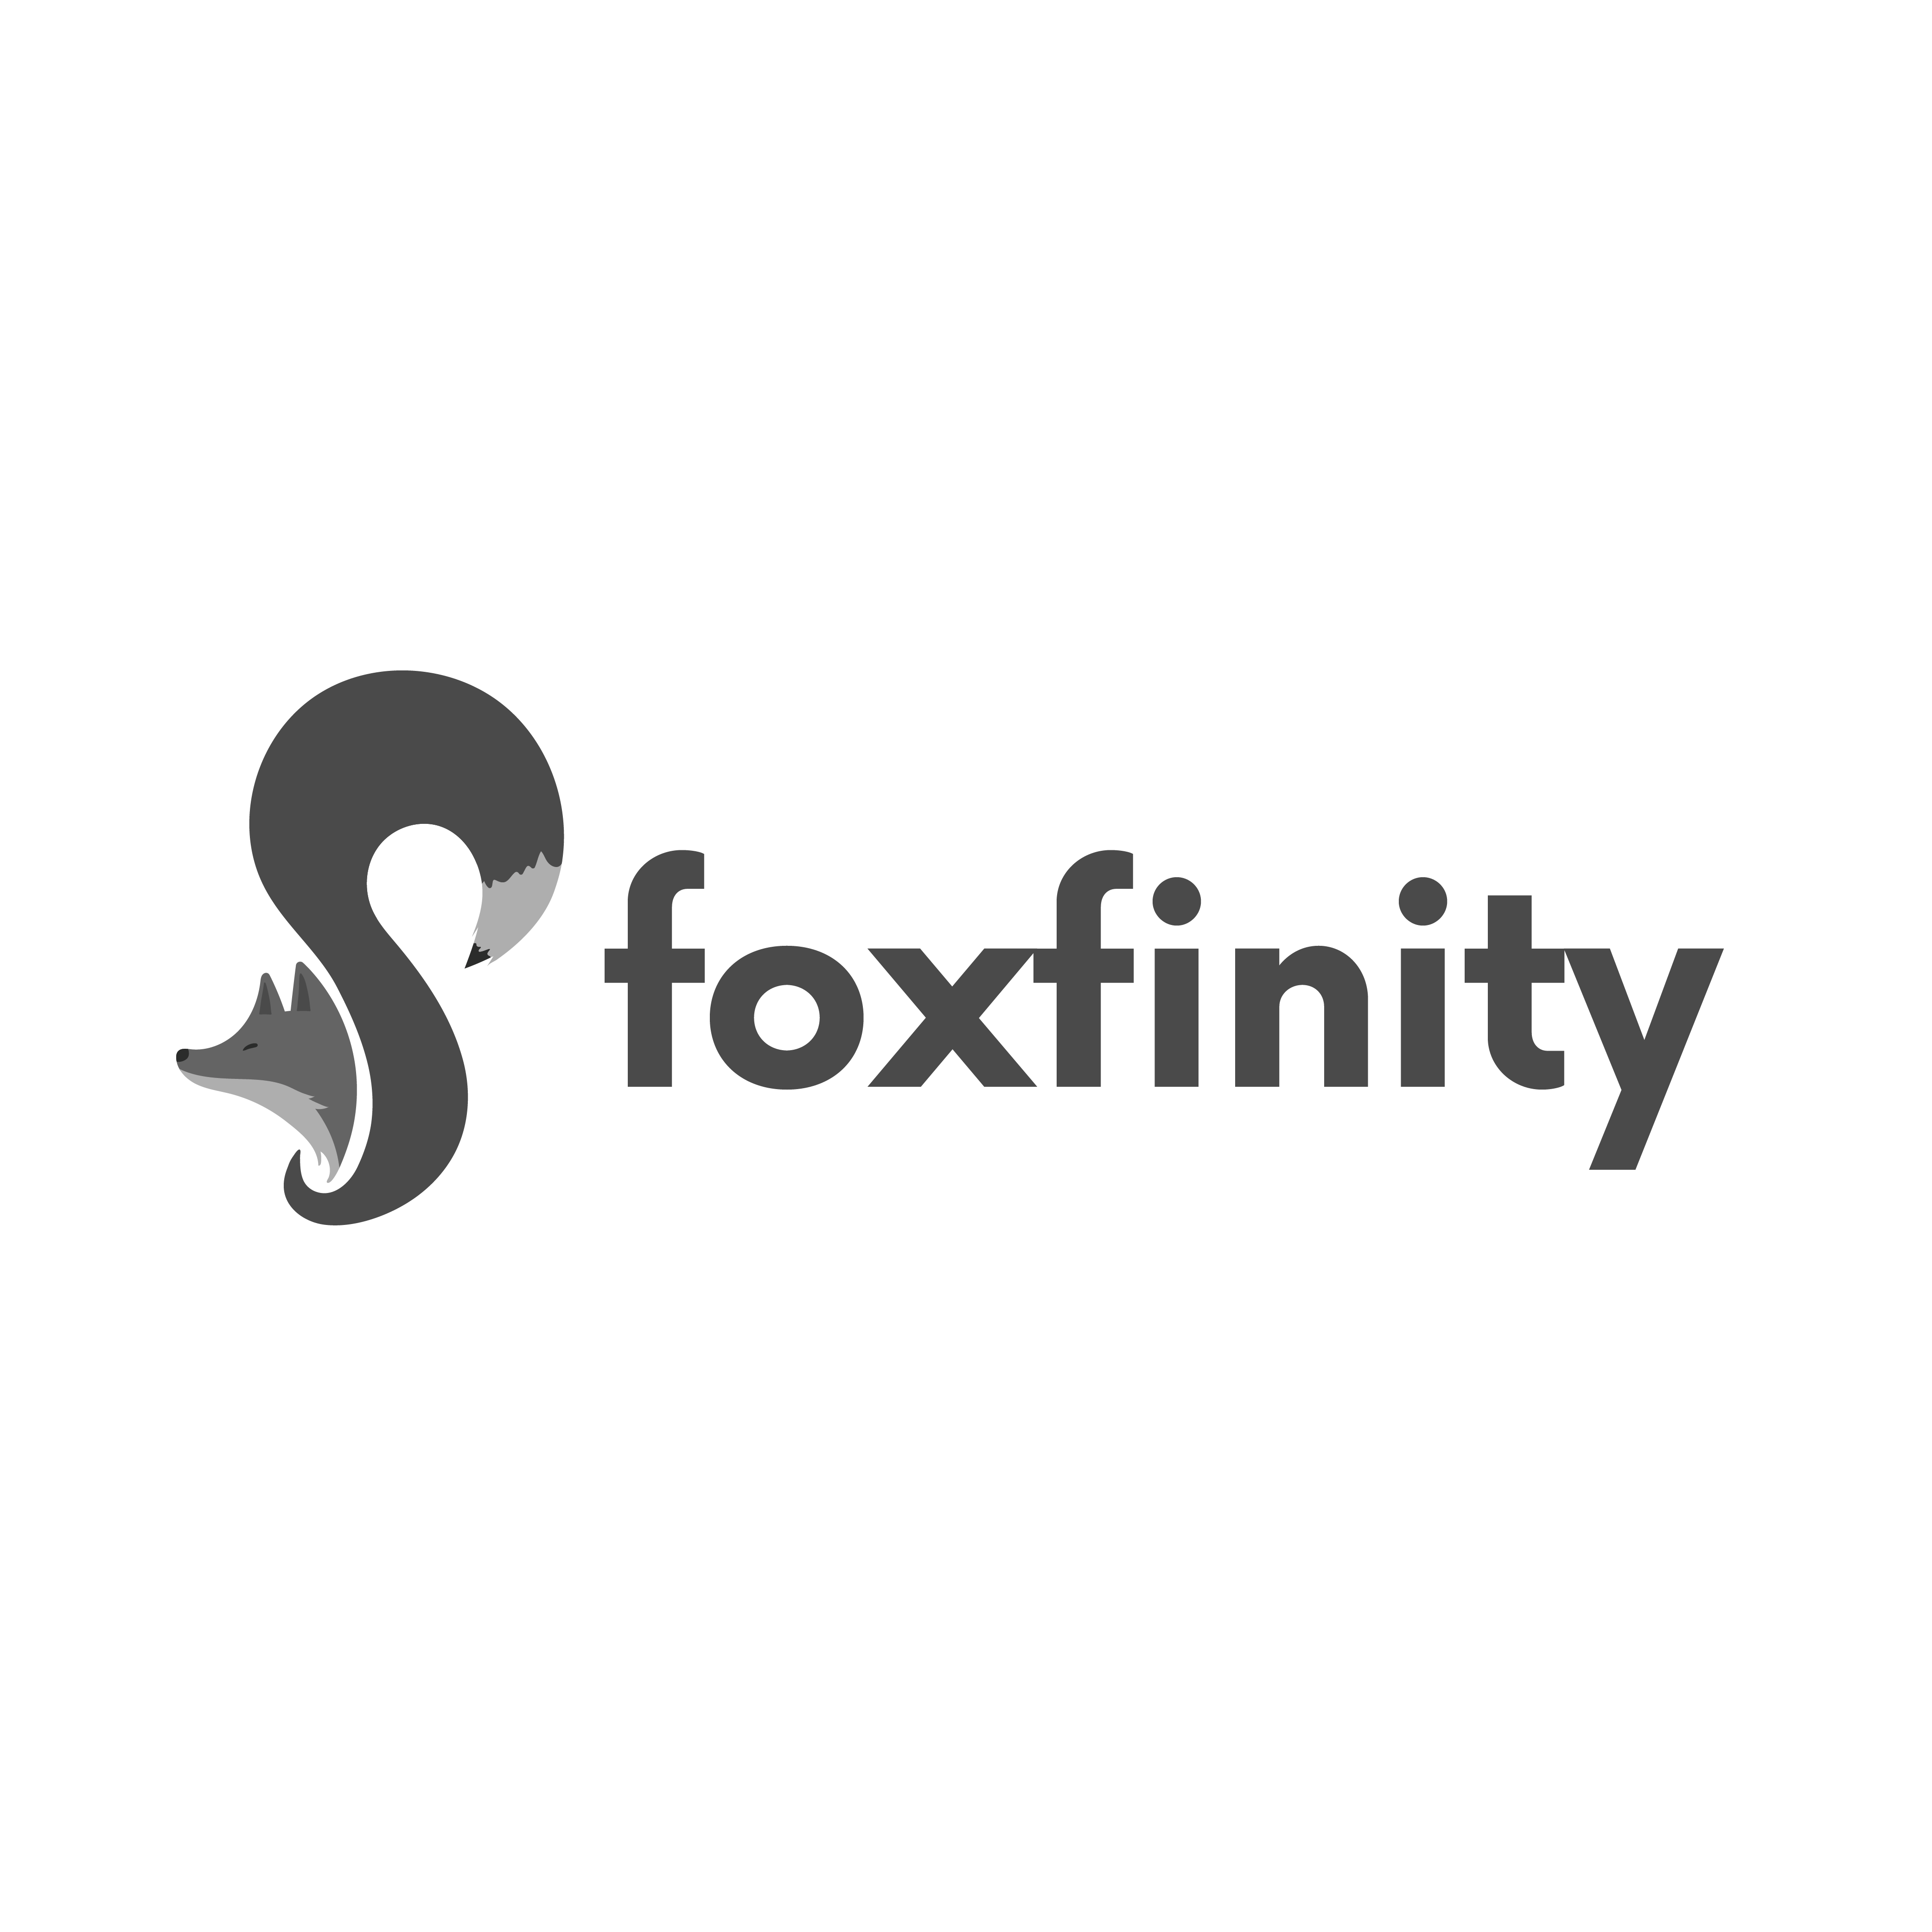 foxfinity Logo Gray